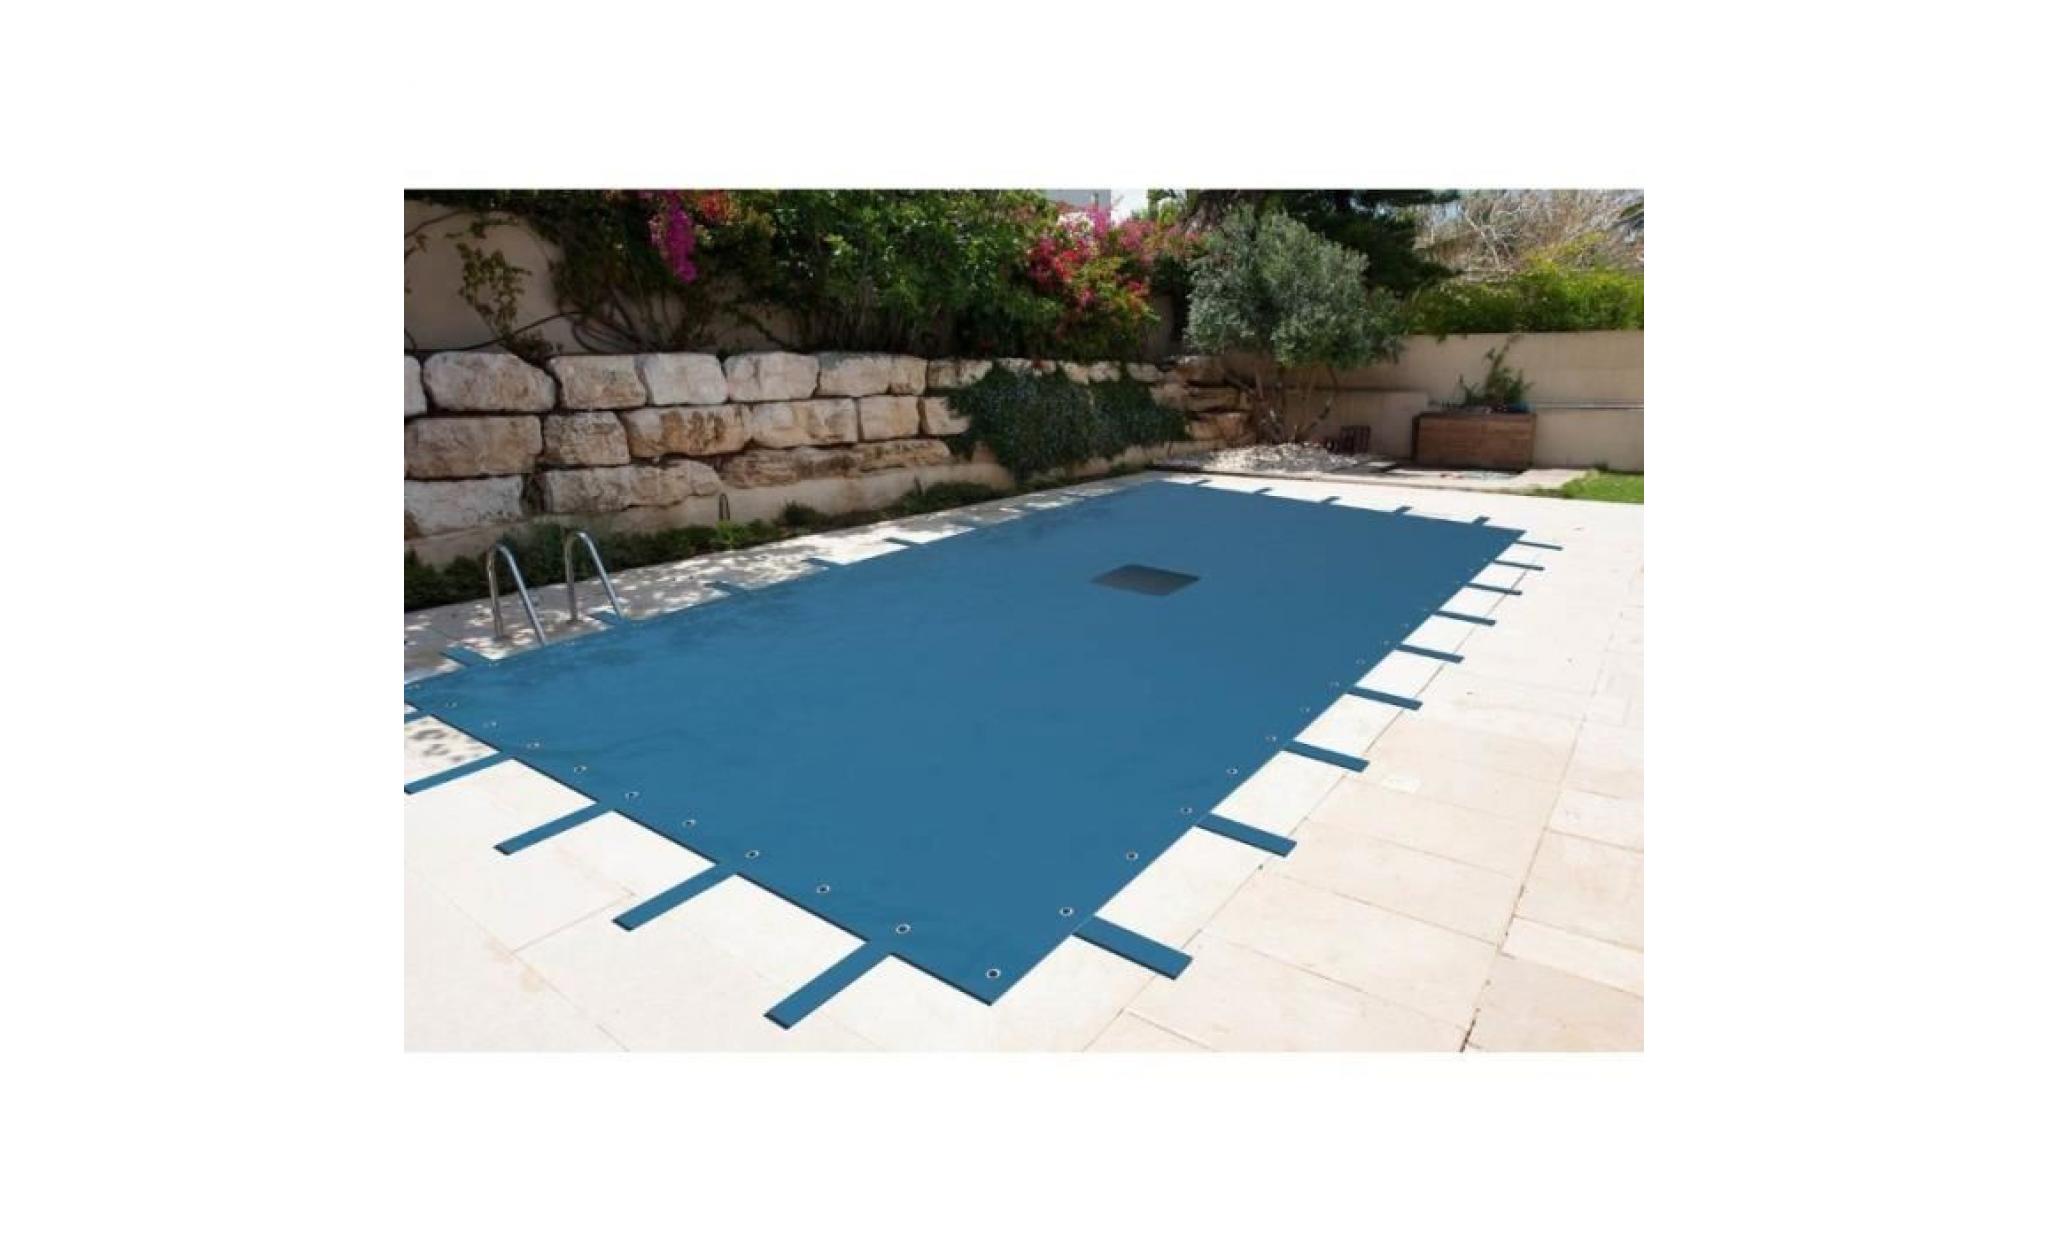 bâche piscine rectangulaire 8 x 14 m avec filet d'écoulement centrale   couverture piscine   bache imperméable   baches piscine